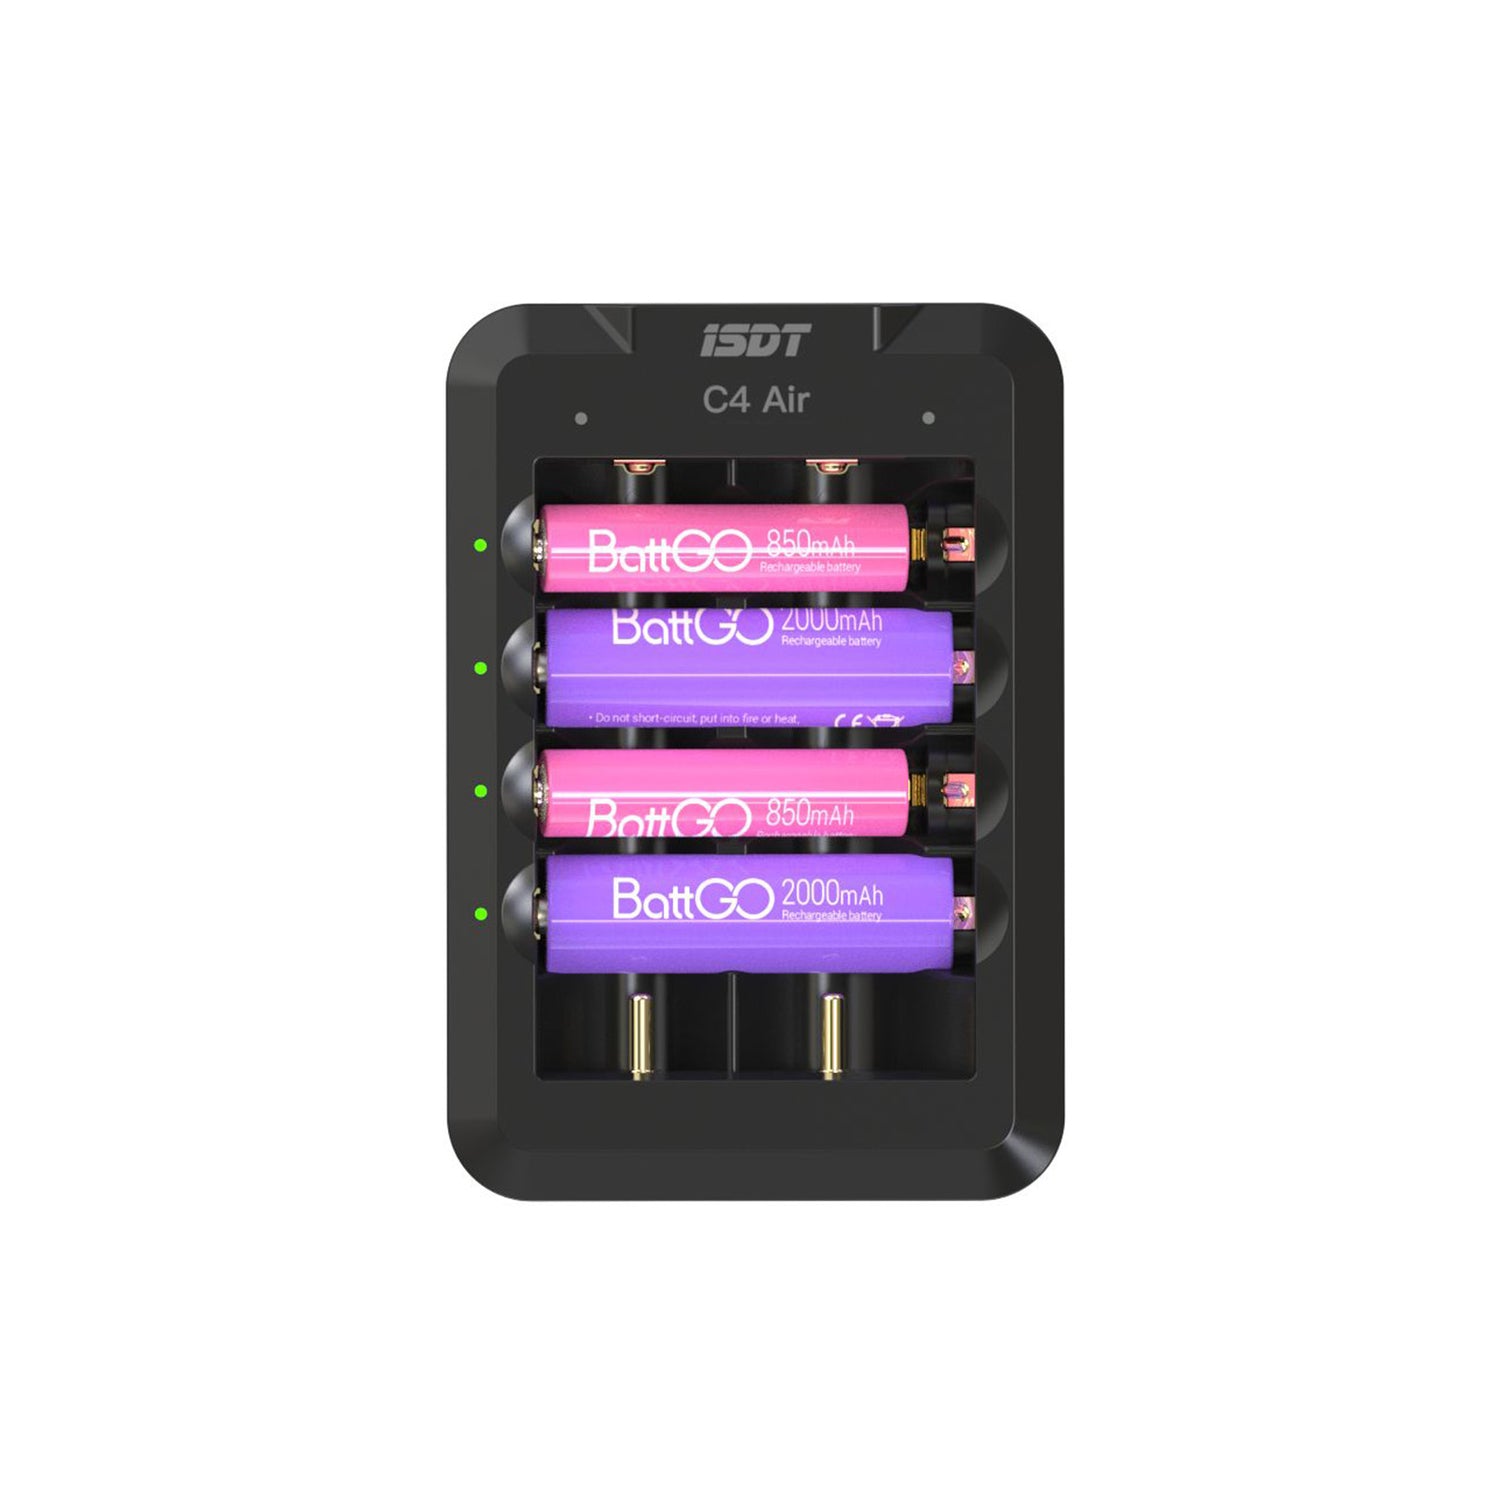 Caricatore a batteria rapida C4, 6 slot USB C Caricatore della batteria domestica con funzione di connessione app Bluetooth